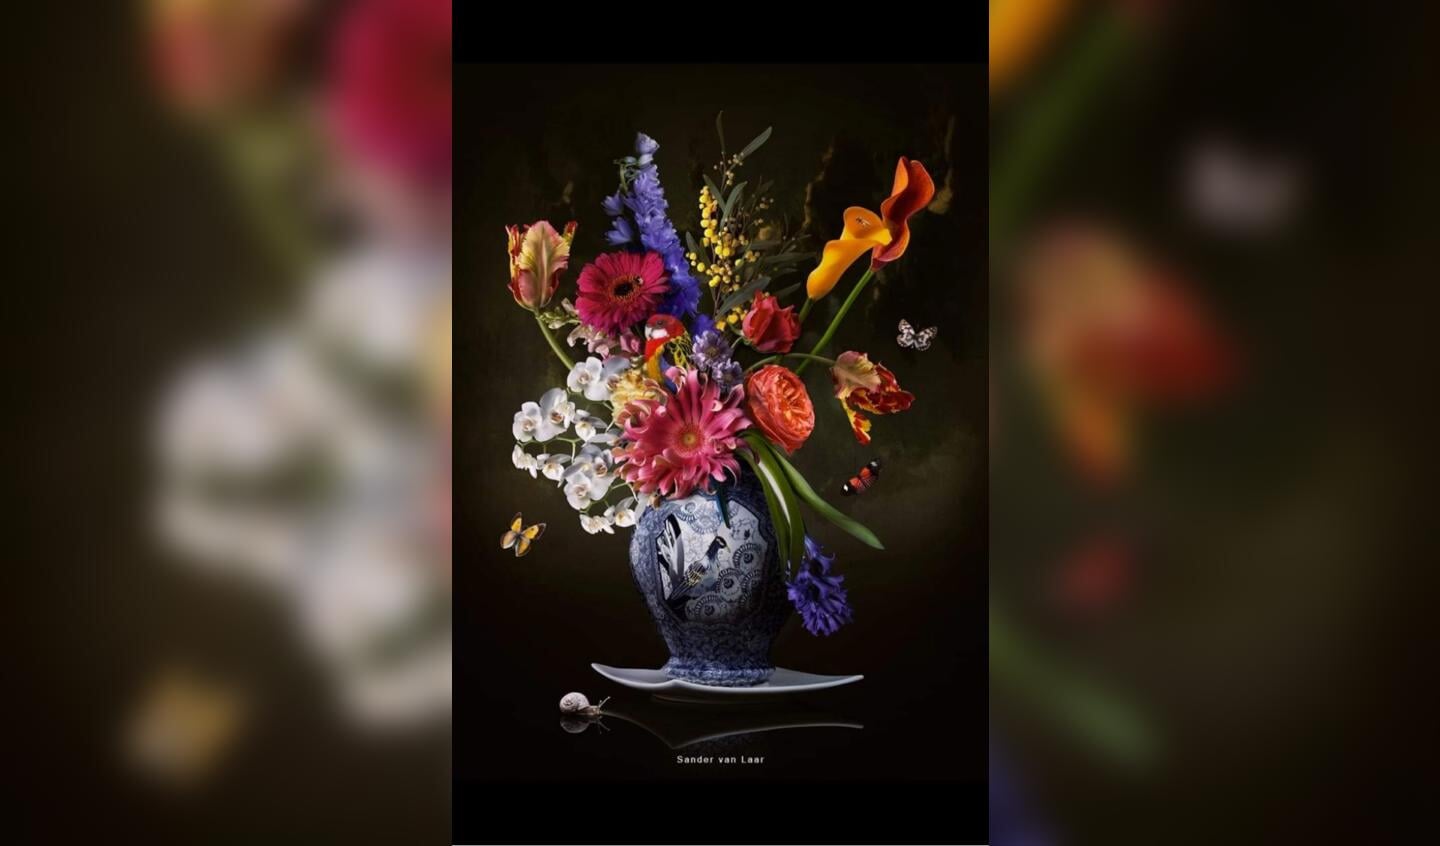 Royal freedom; de digitale bloemenkunst van Sander van Laar wordt gezien als de nieuwe revolutie in de digitale wereld van fotografie.  